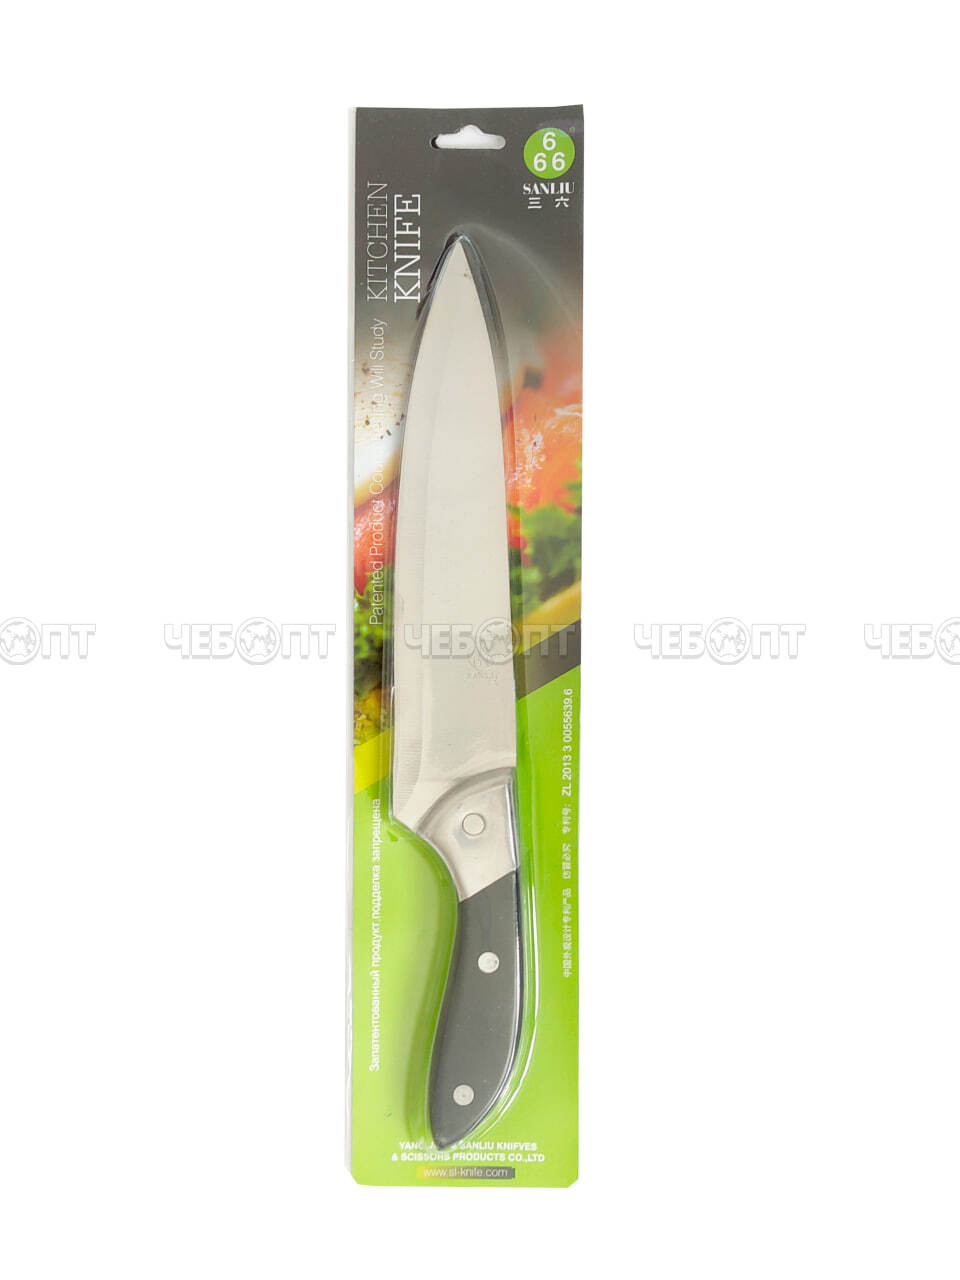 Нож кухонный поварской 20 см 666 из нержавеющей стали с пластиковой ручкой, широкое лезвие арт. 26005 $ [120] GOODSEE. ЧЕБОПТ.